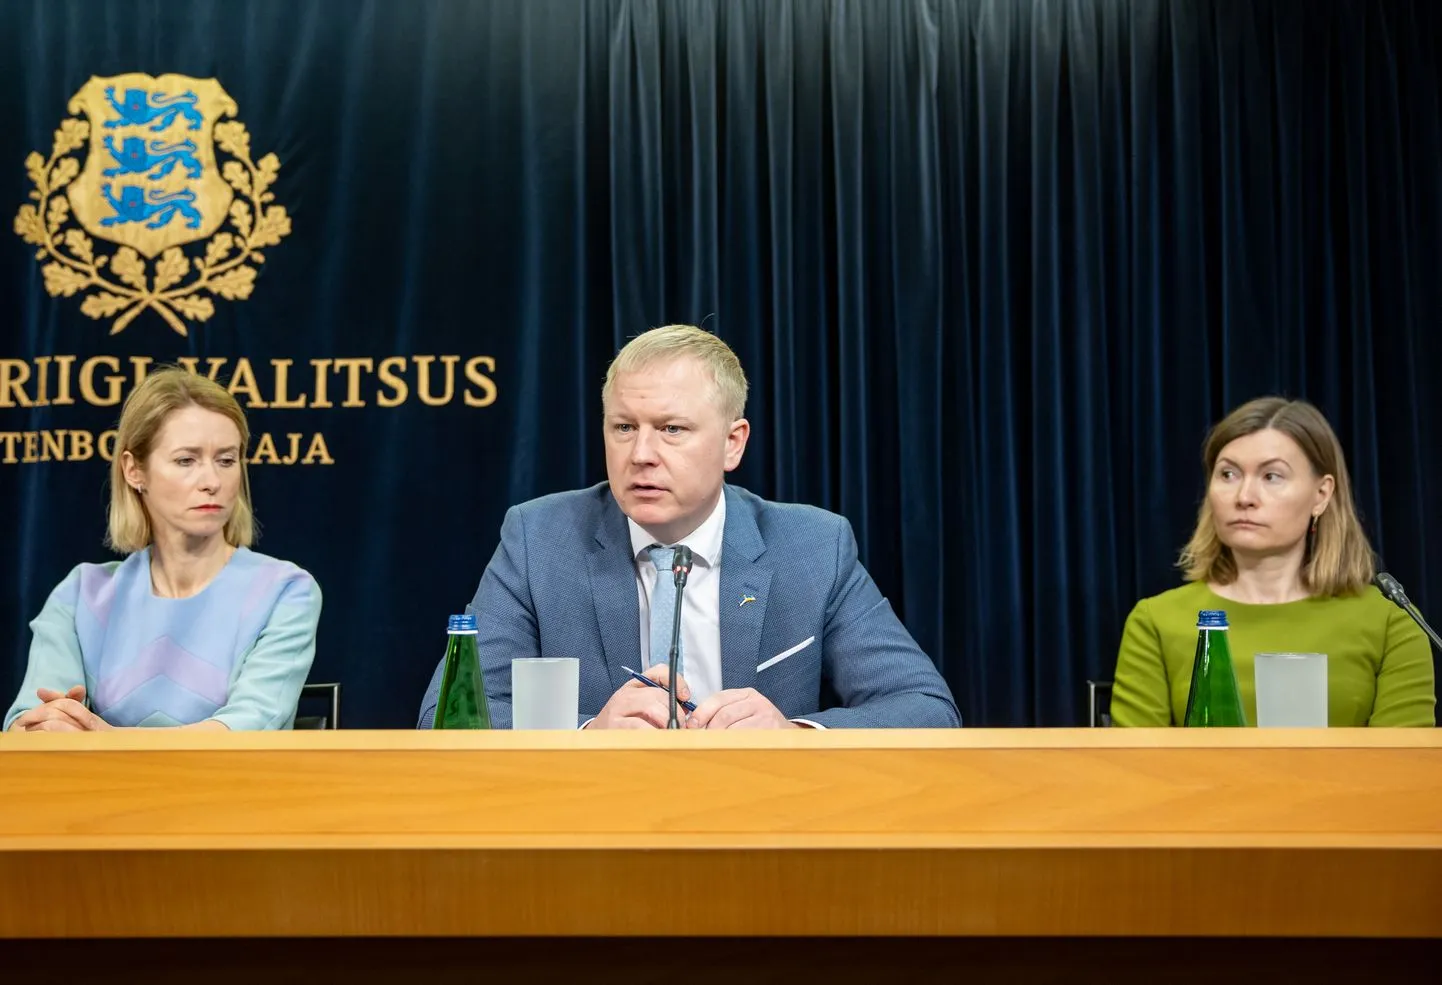 Сегодня состоится внеочередное заседание правительства, на котором будет одобрена программа стабильности. Слева направо: Кая Каллас, Март Вырклаэв и Рийна Сиккут.